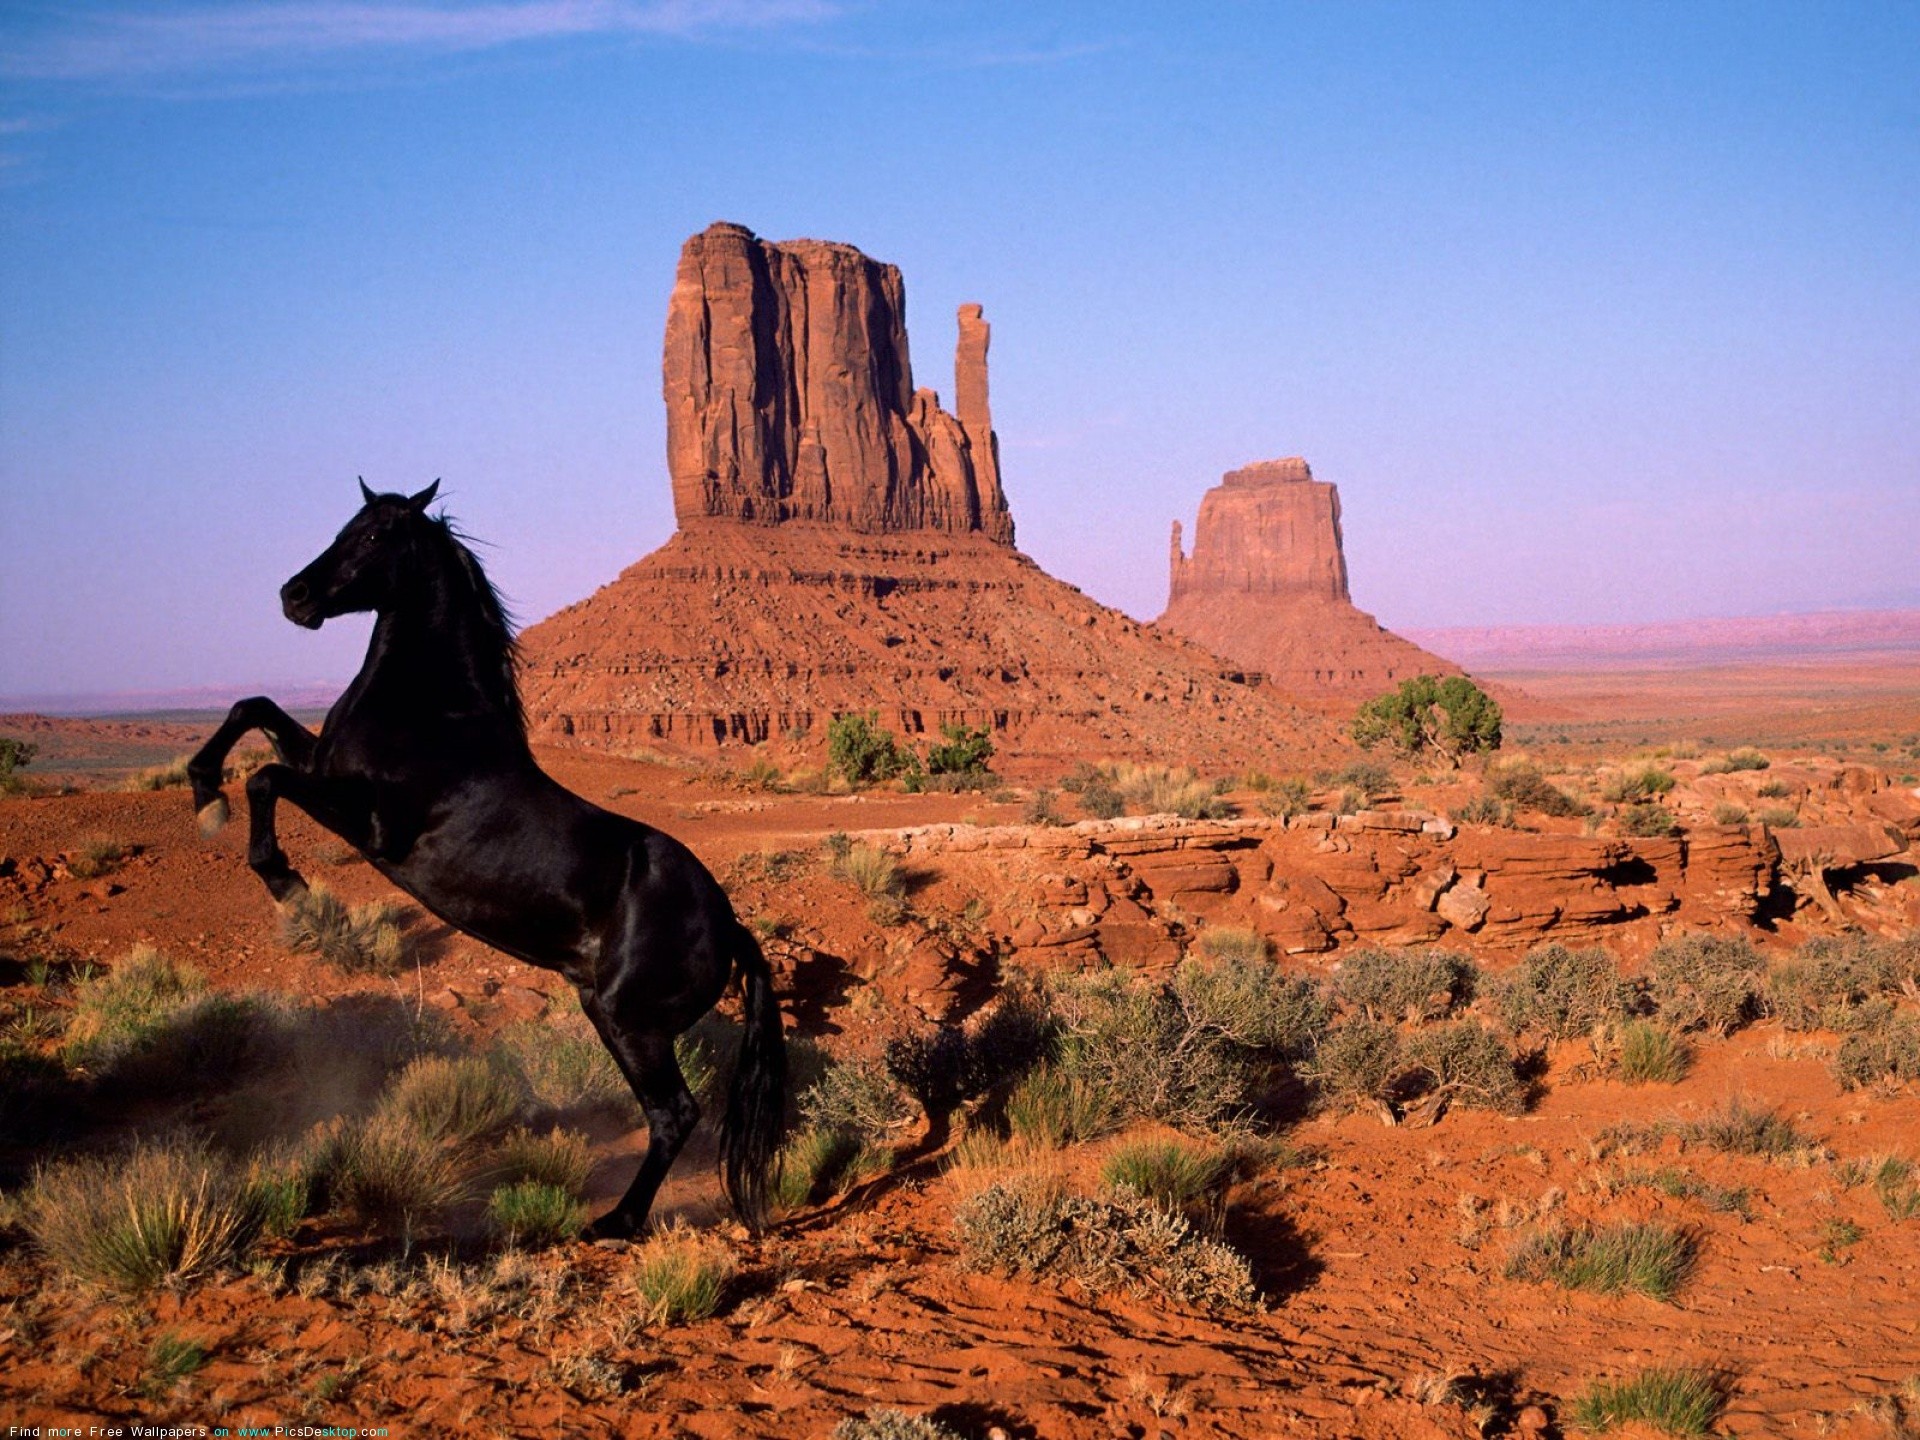 landscapes, animals, horses - desktop wallpaper